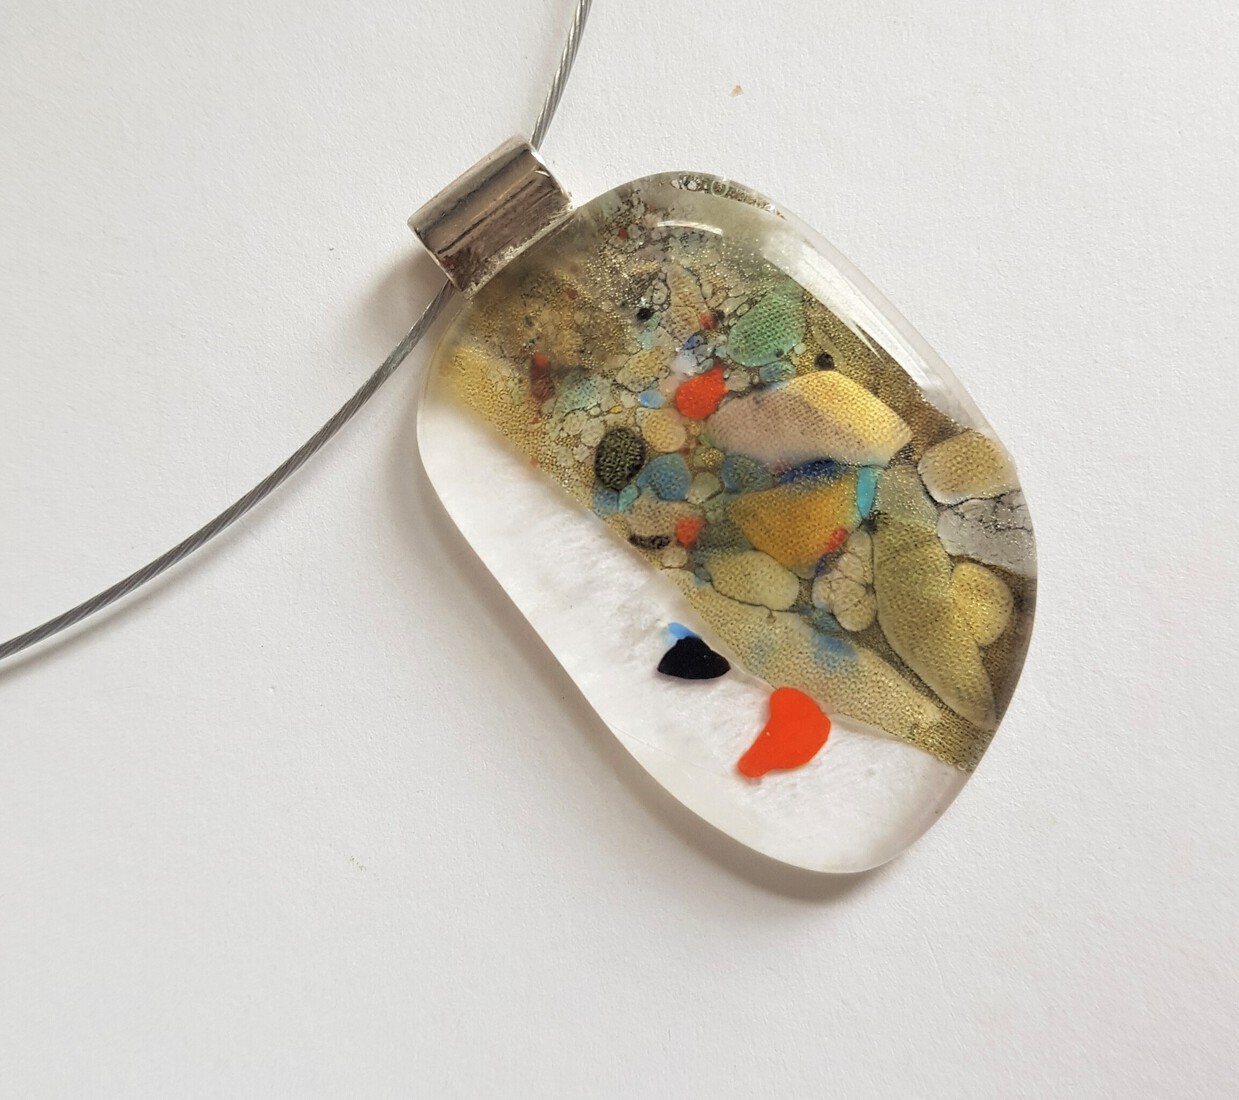 glashanger, geinspireerd op Gustav Klimt